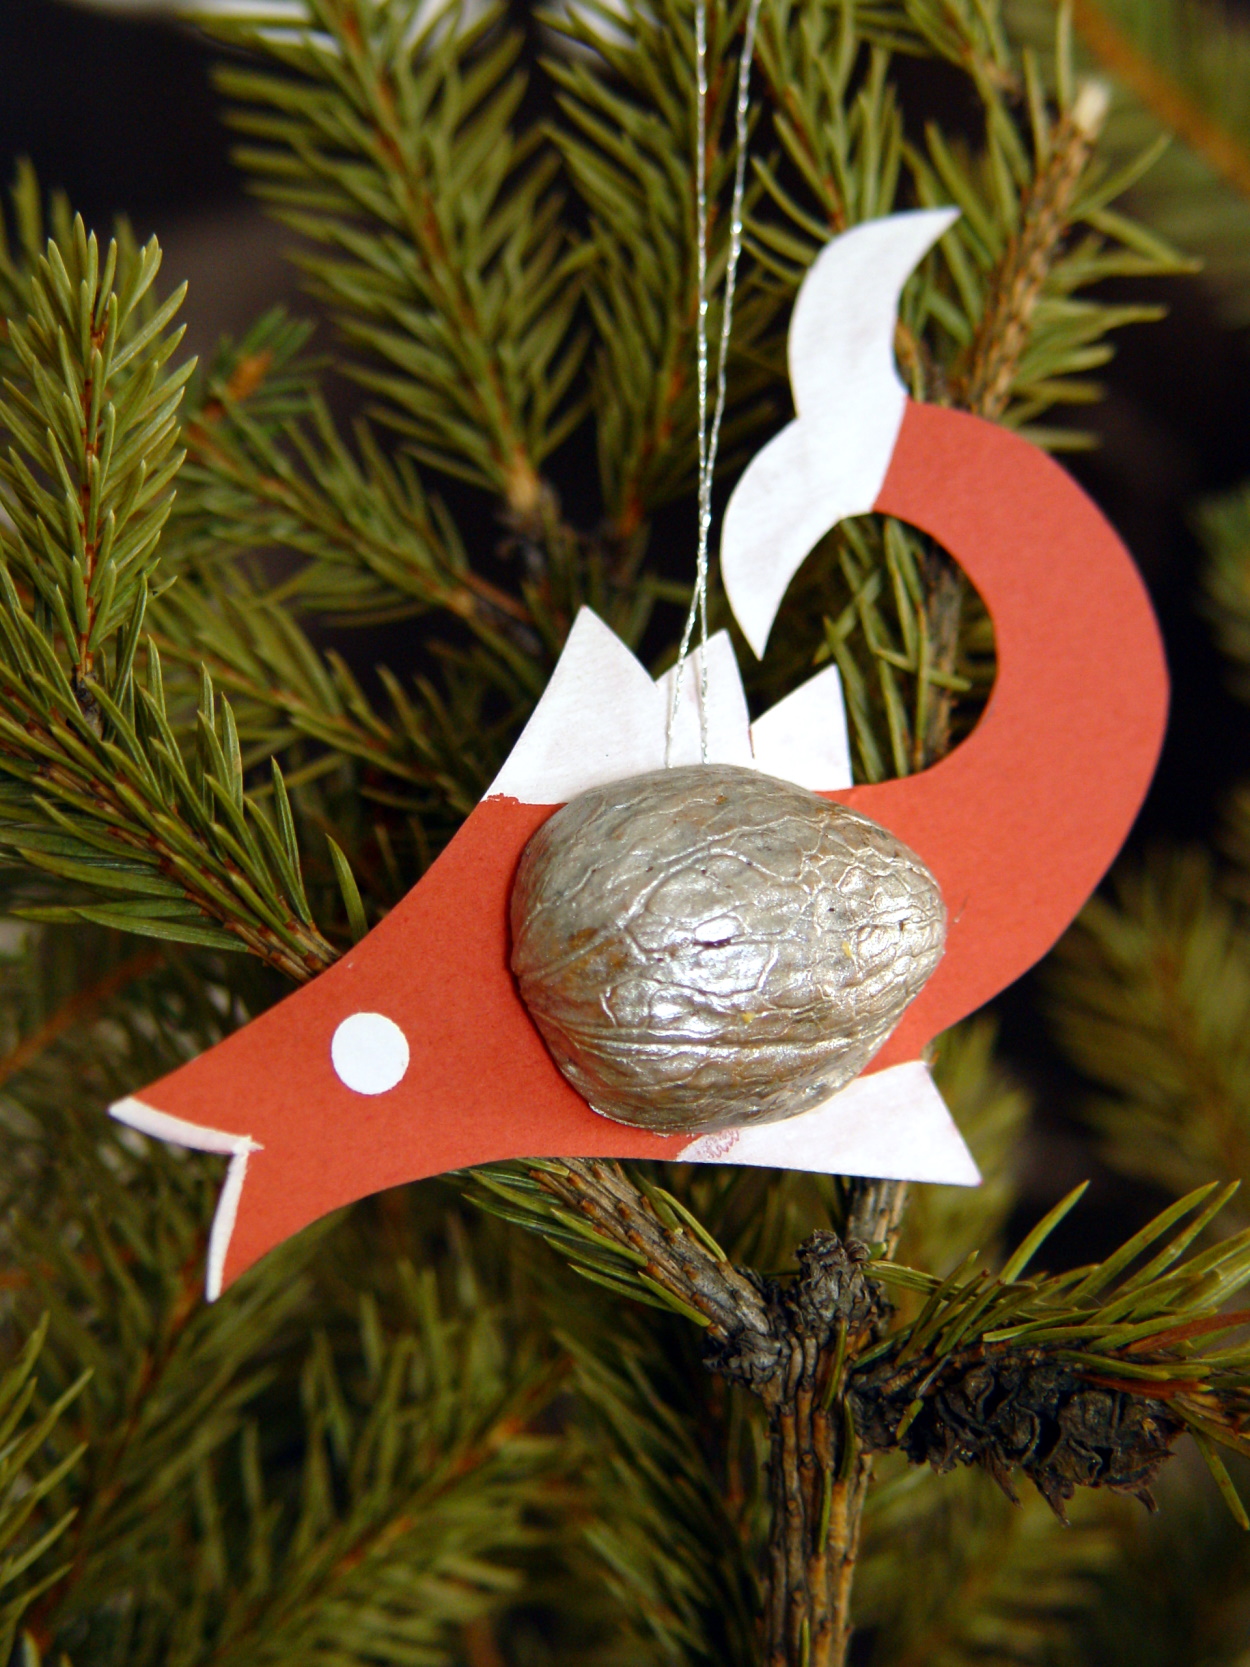 Warsztaty bożonarodzeniowe – tradycyjne ozdoby świąteczne na choinkę